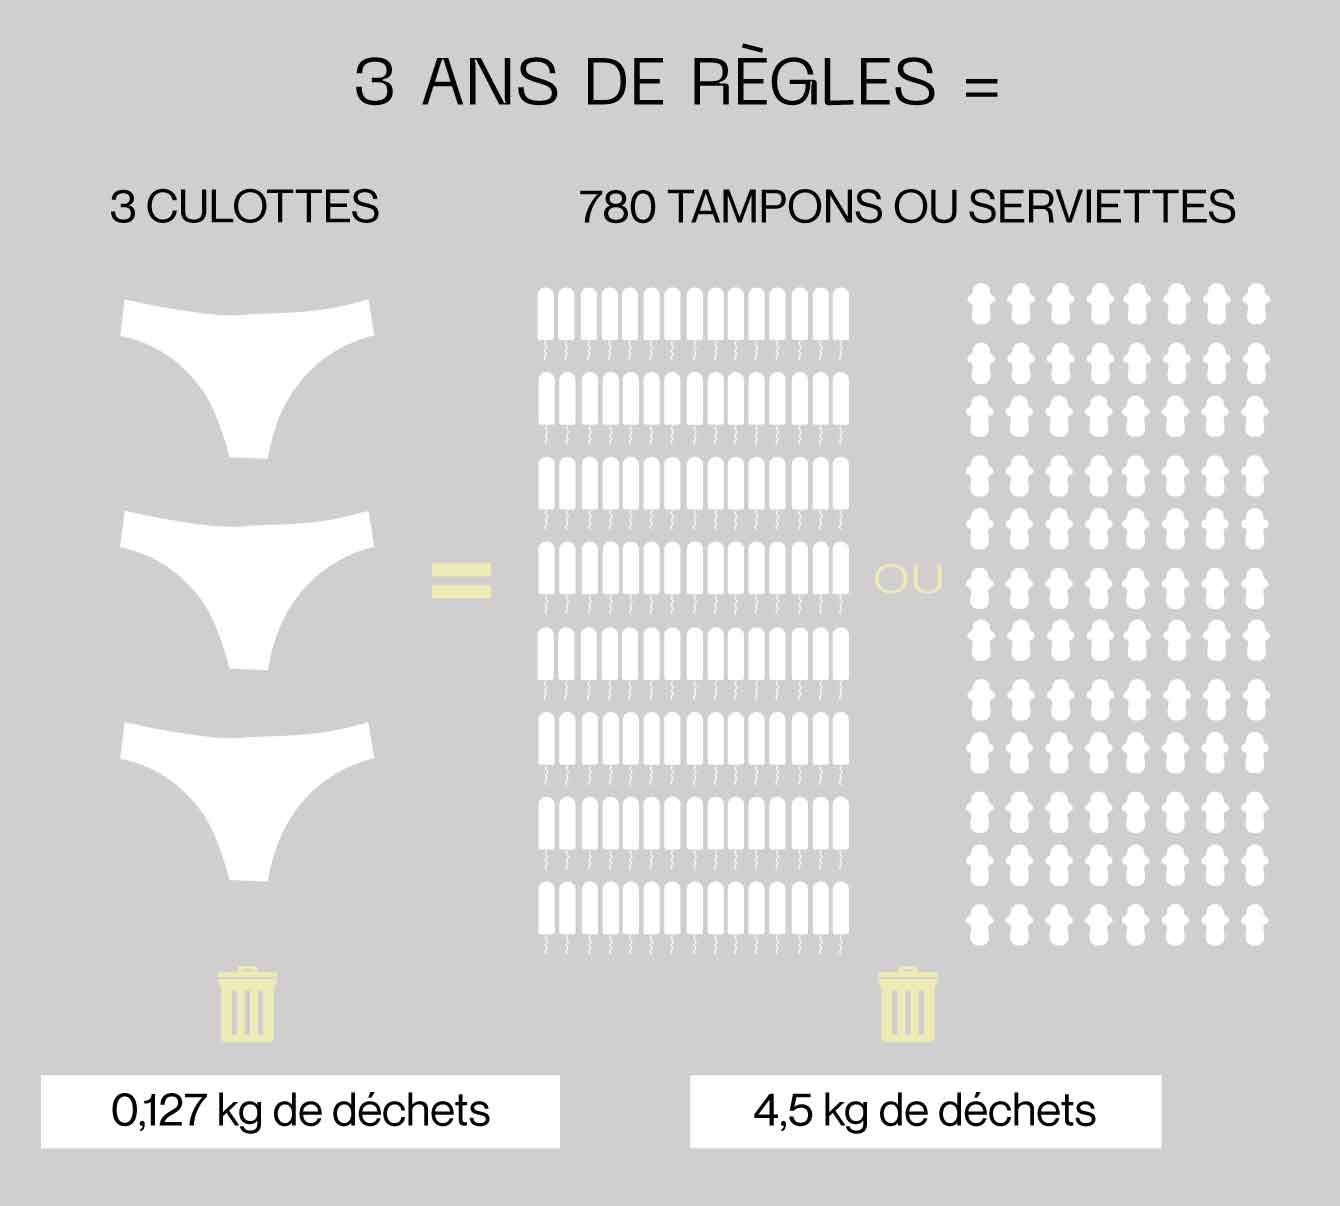 équivalence 3 culottes de regles vs des tampons ou serviettes sur 3 ans